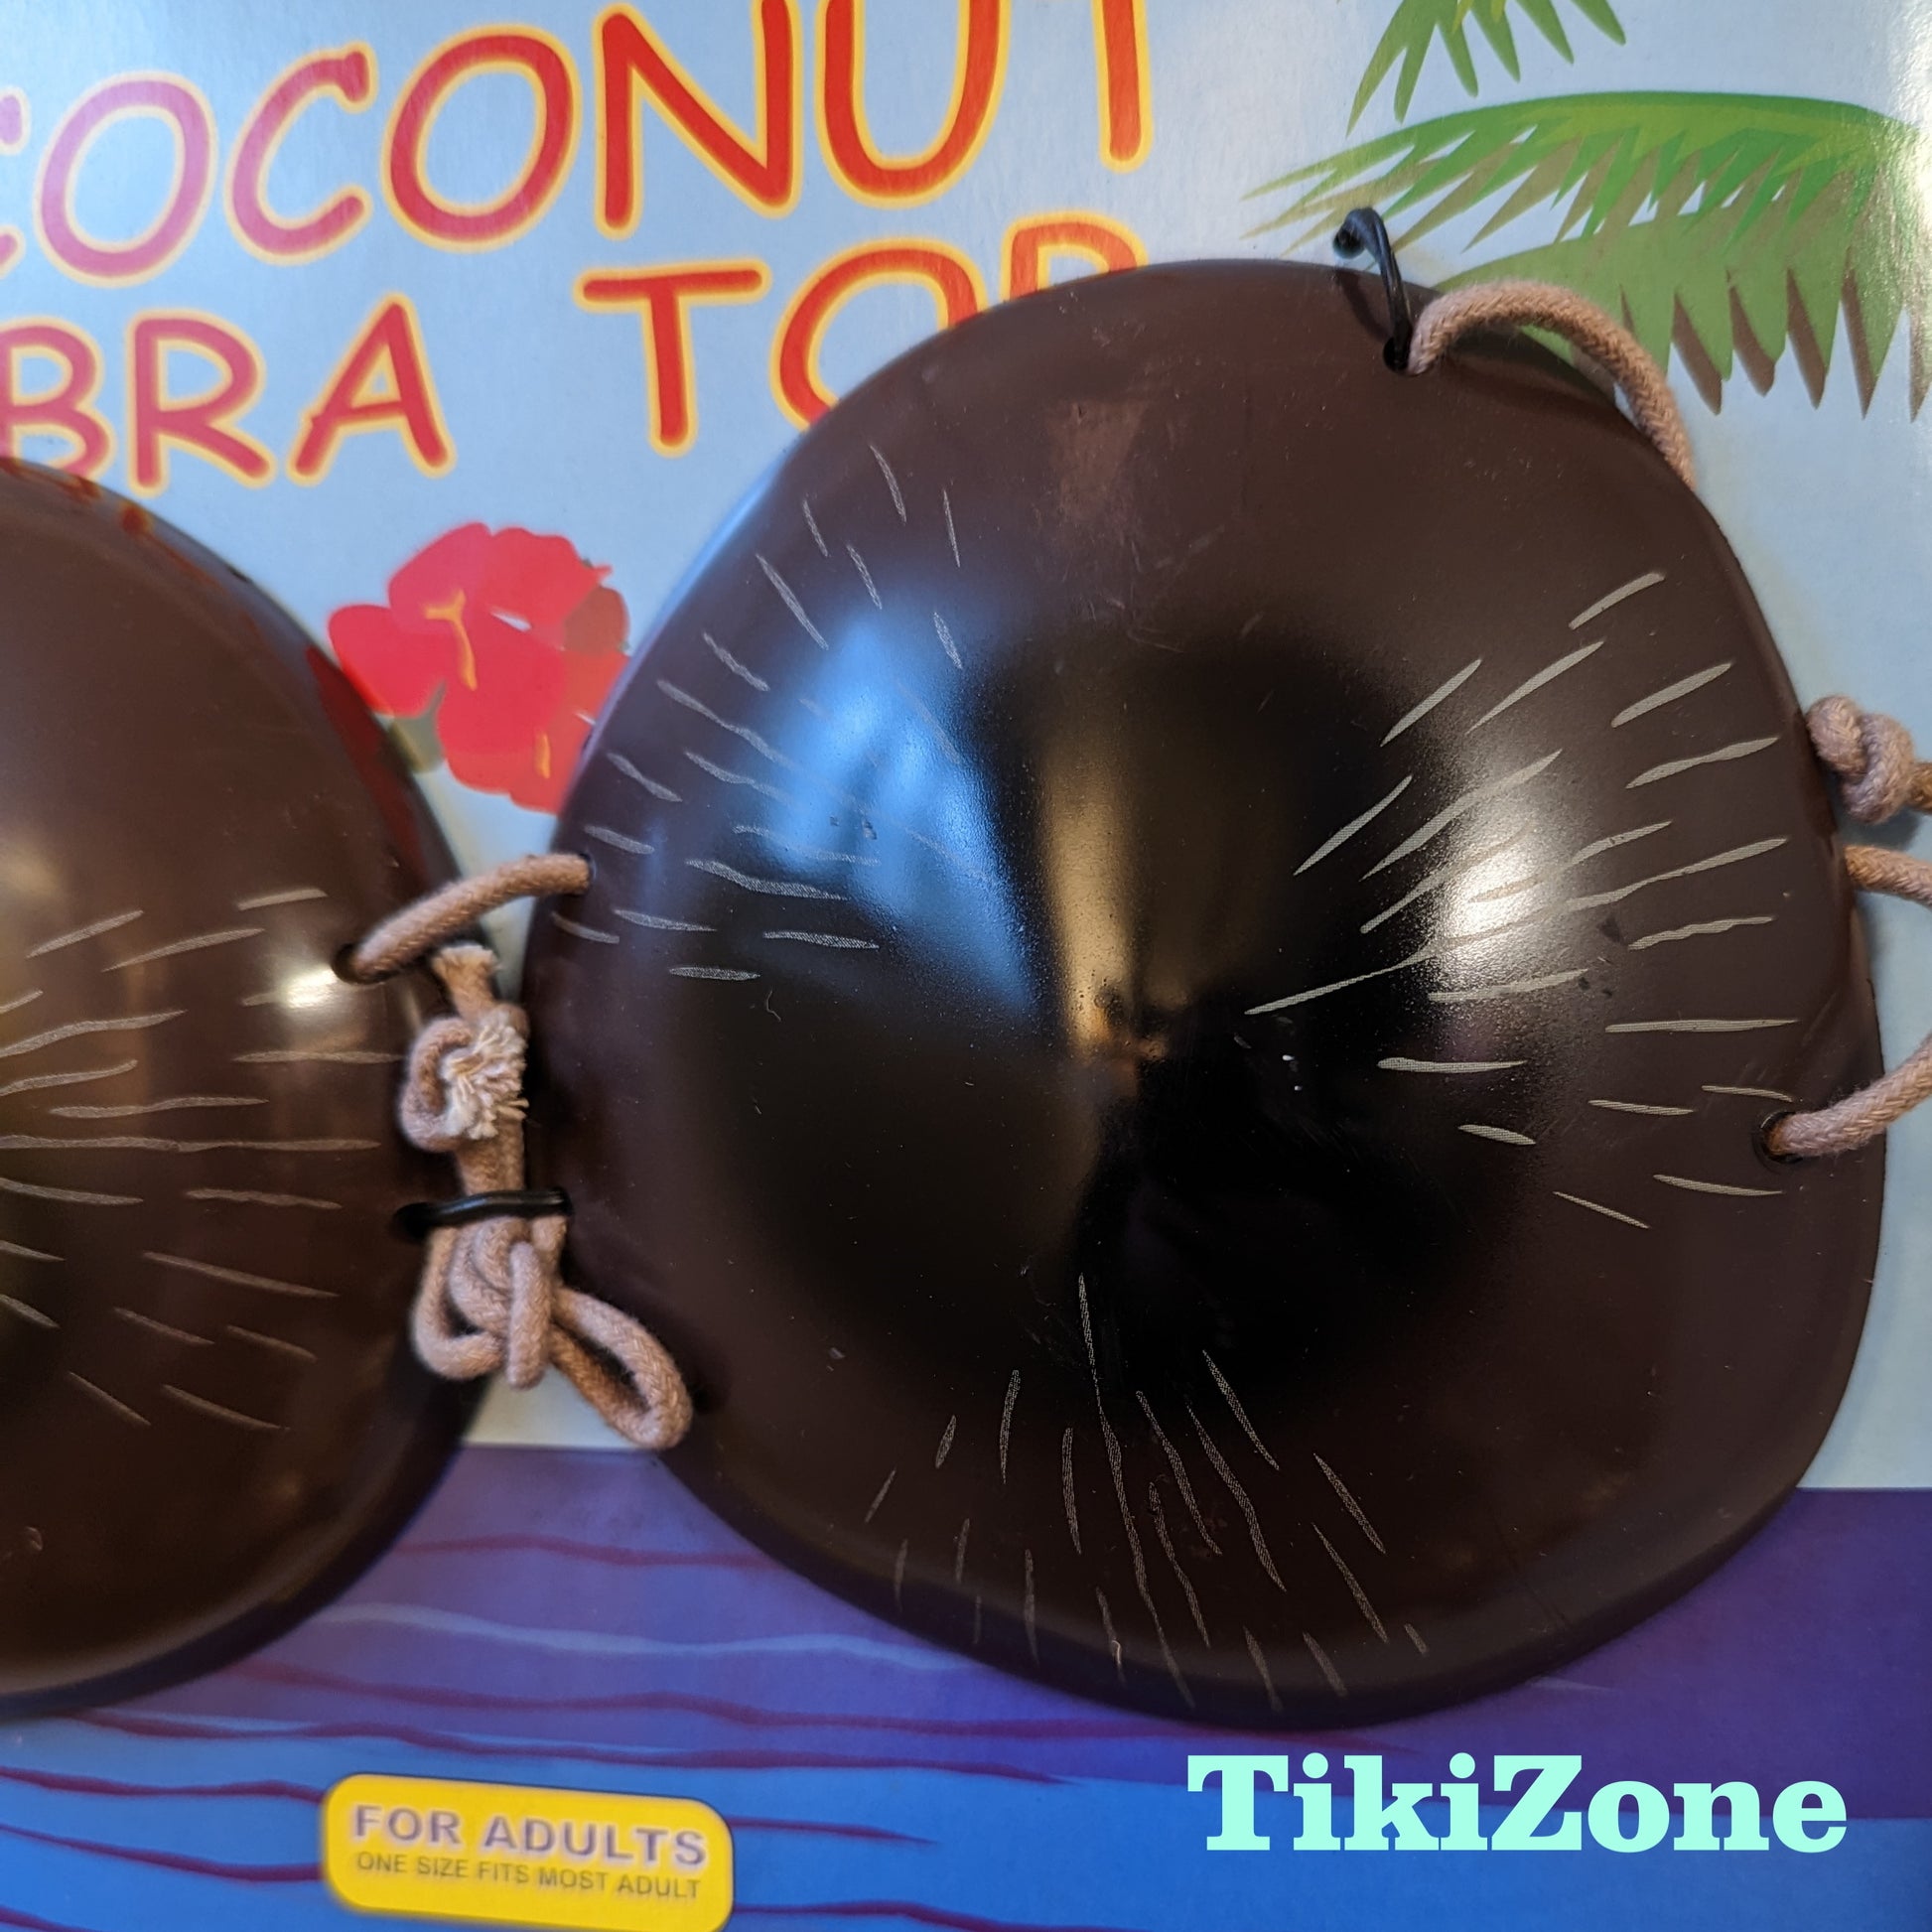 Coconut bra